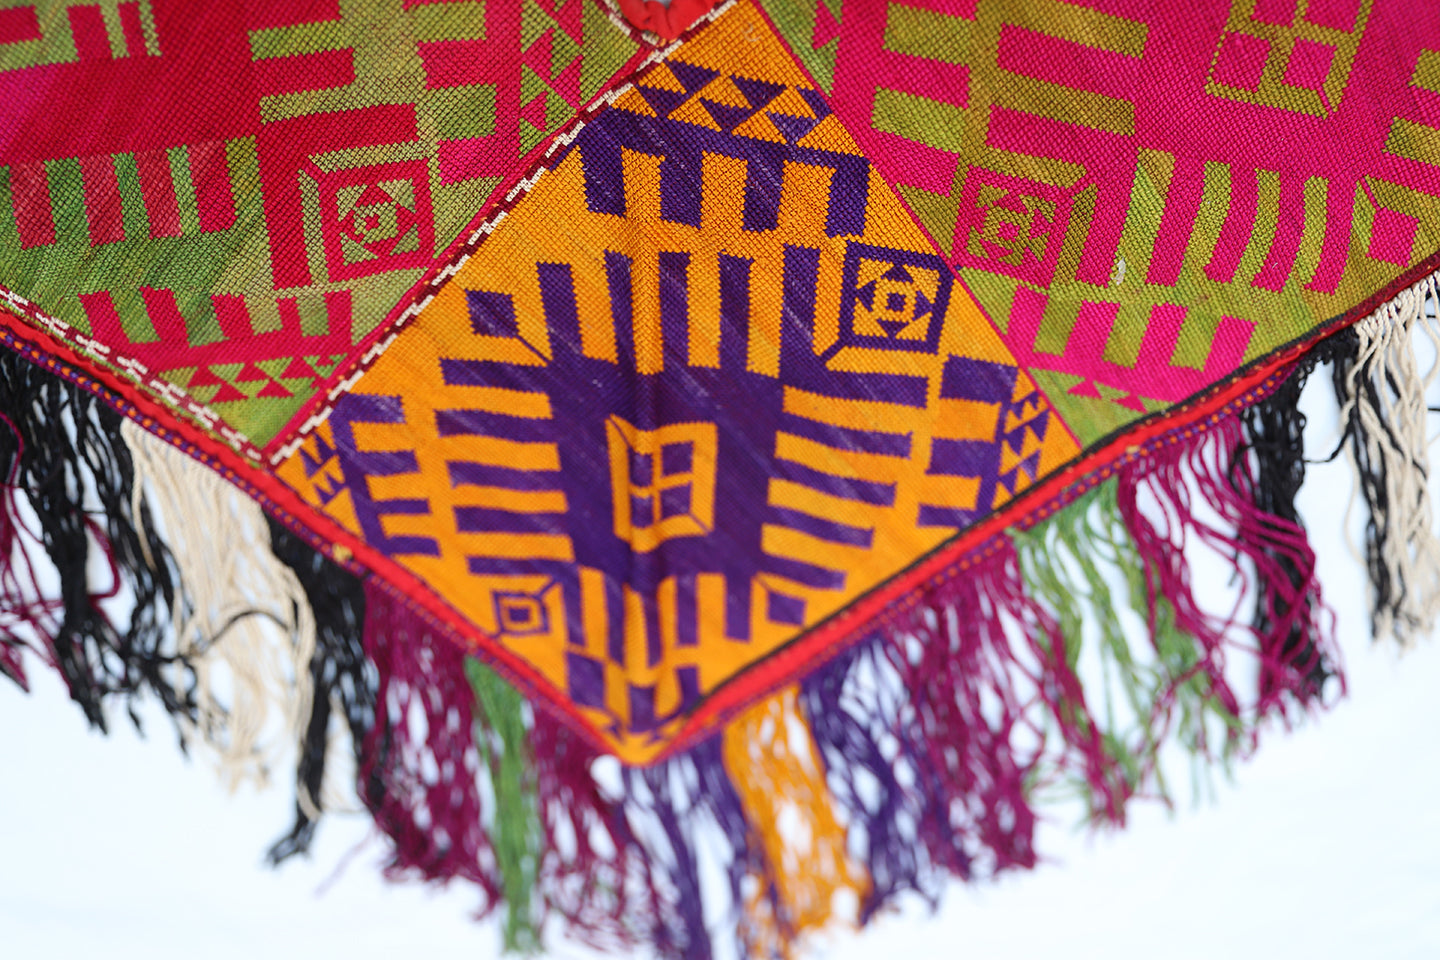 2'x4' Hand Embroidery Uzbek Yurt Decorative